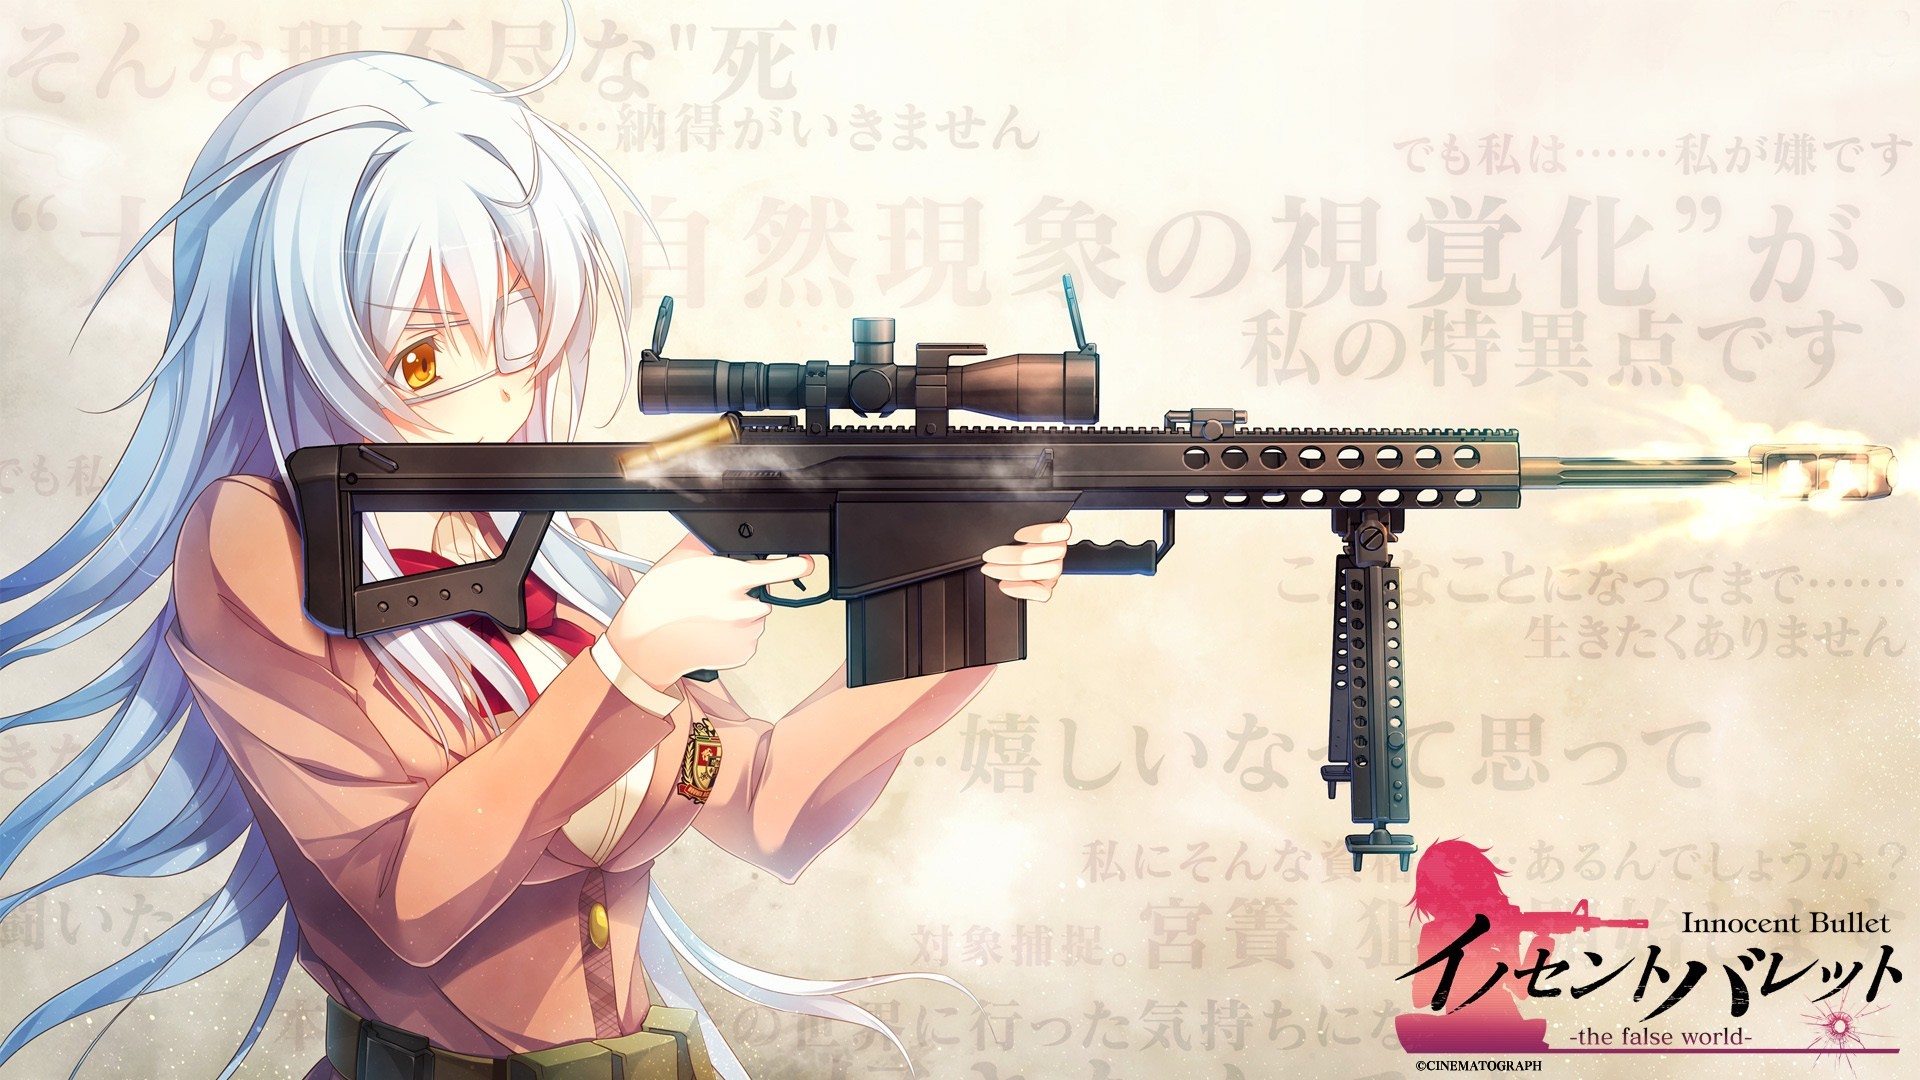 Gun, Women, Anime, Anime Girls, Eyepatches, Innocent Bullet the False World